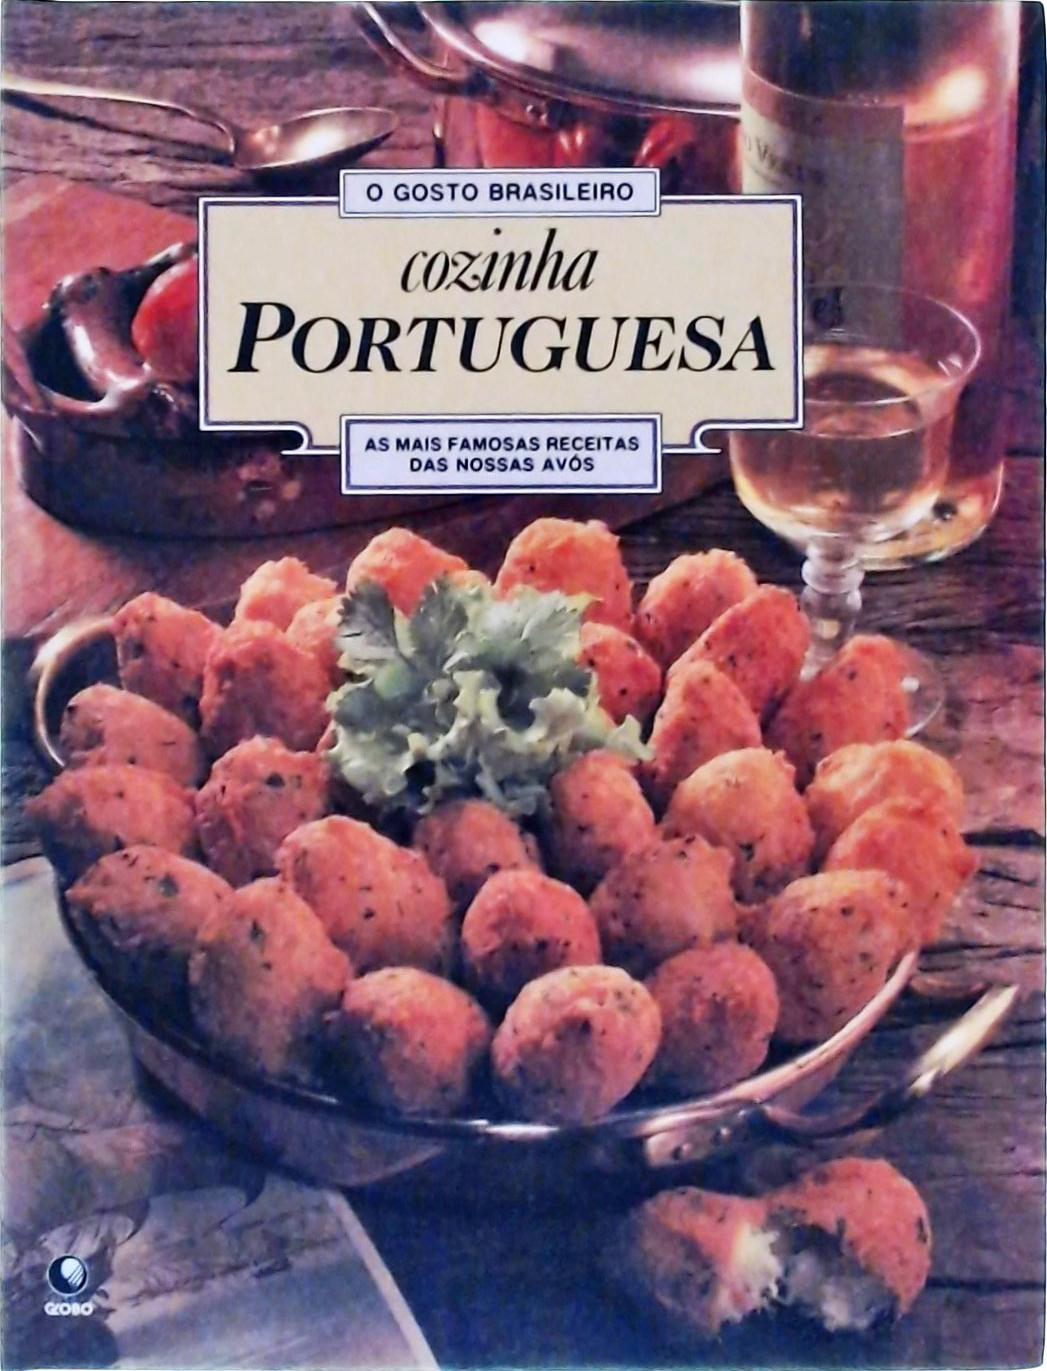 O Gosto Brasileiro, Cozinha Portuguesa